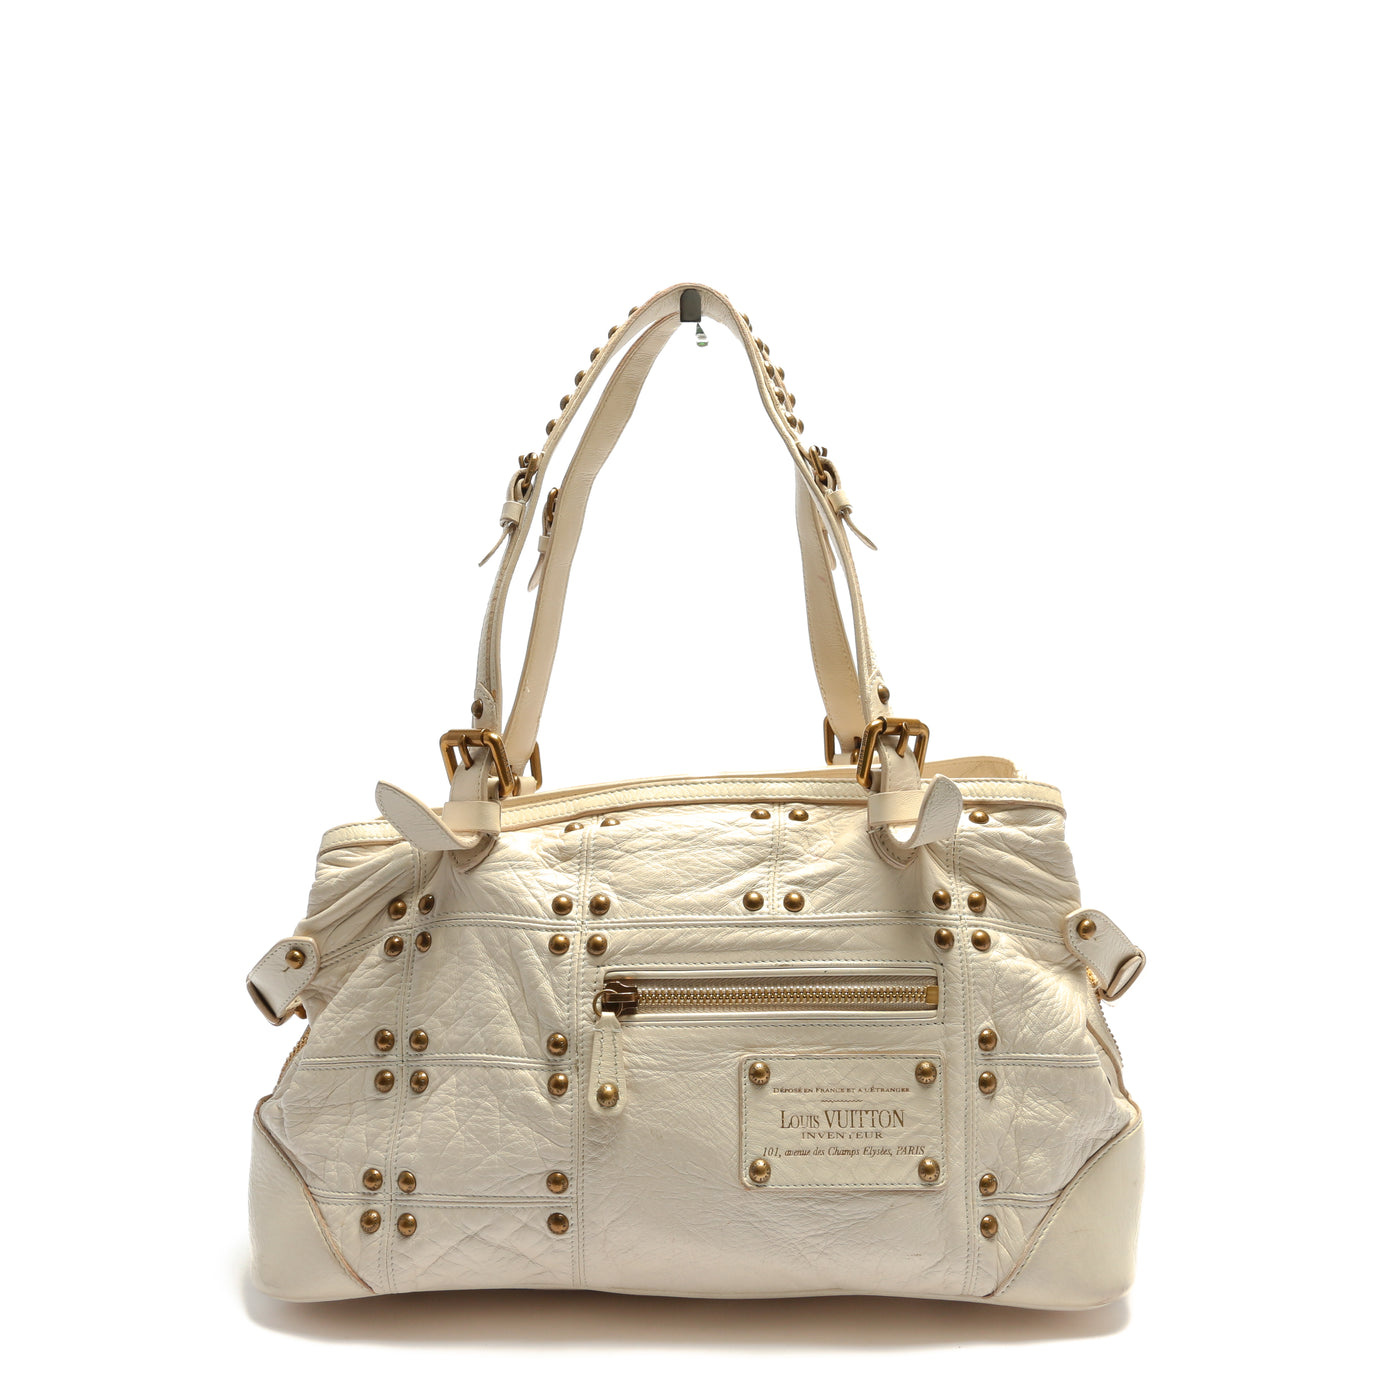 Louis Vuitton Handbags Outlet Store.  Louis vuitton, Bags, Louis vuitton  handbags outlet